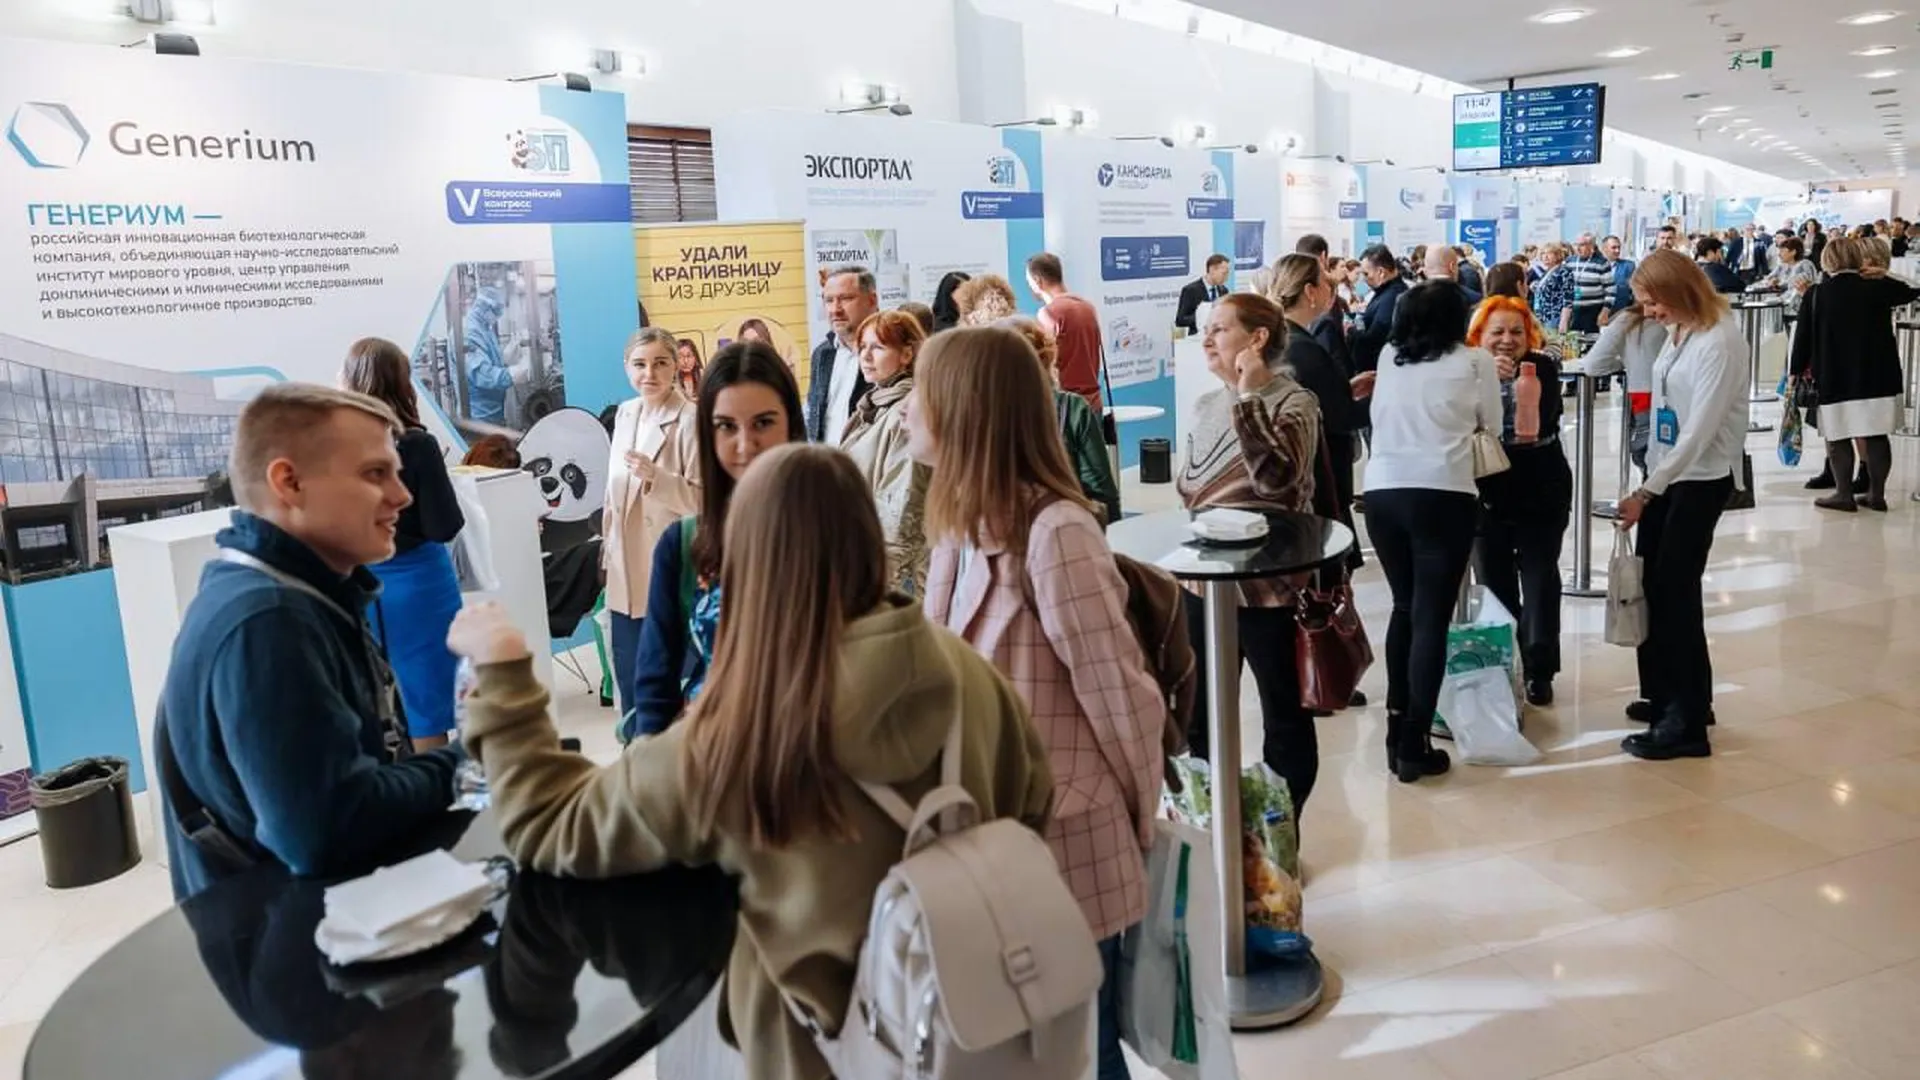 Всероссийский конгресс по детской медицине стартовал в Химках